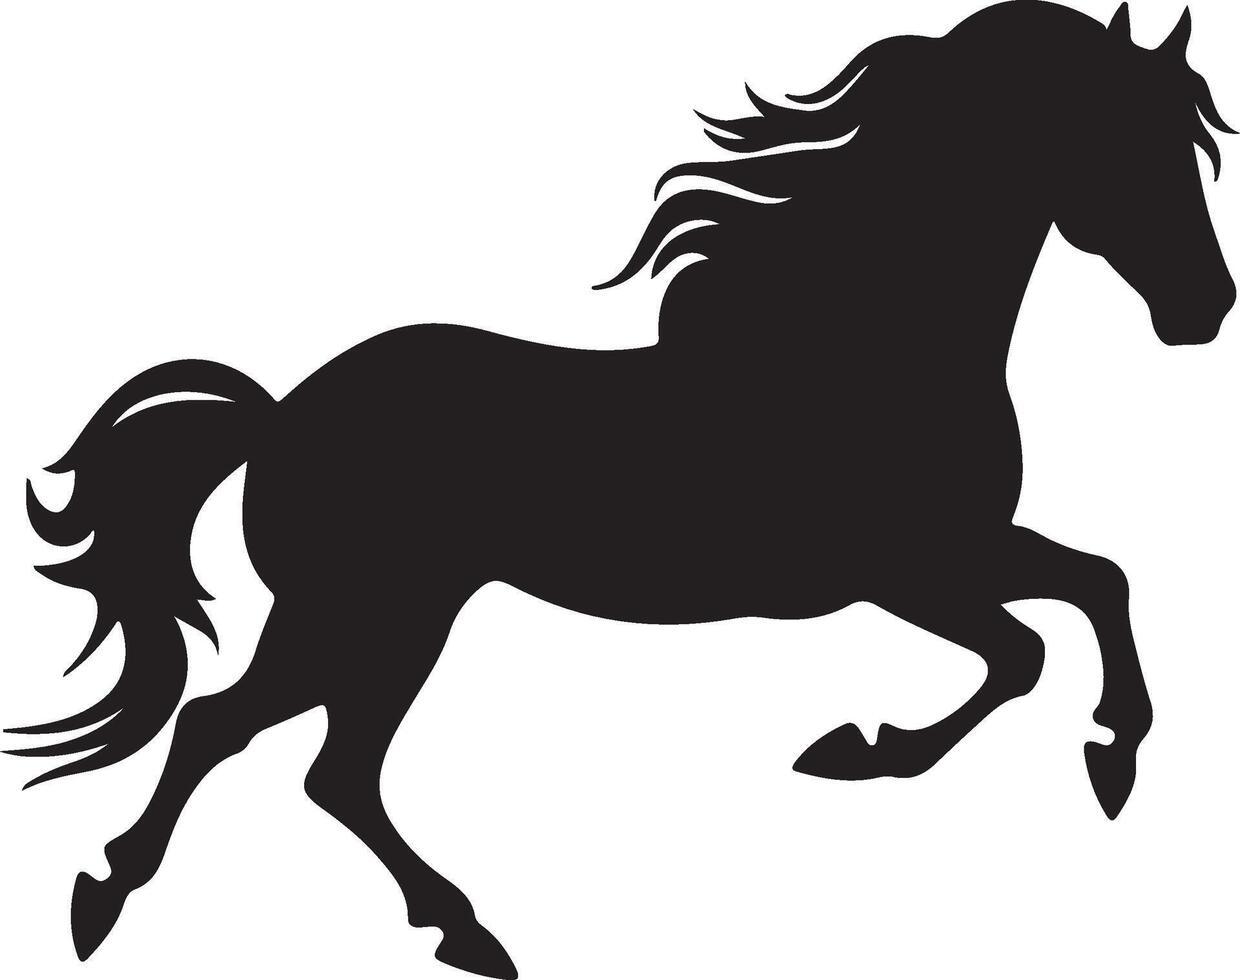 caballo silueta vector ilustración blanco antecedentes